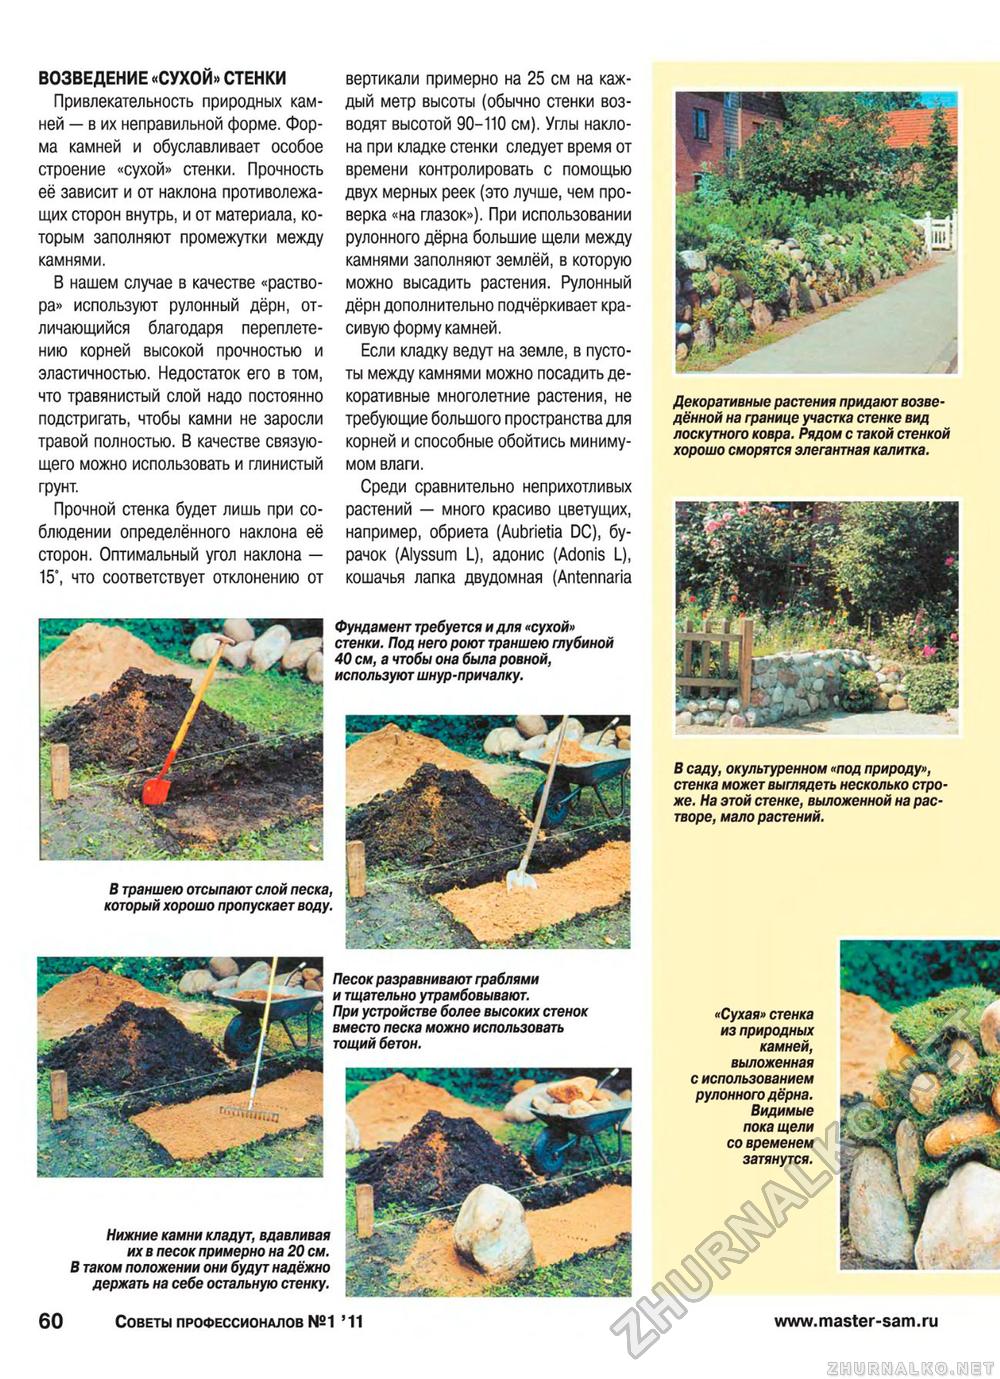 Советы профессионалов 2011-01, страница 60